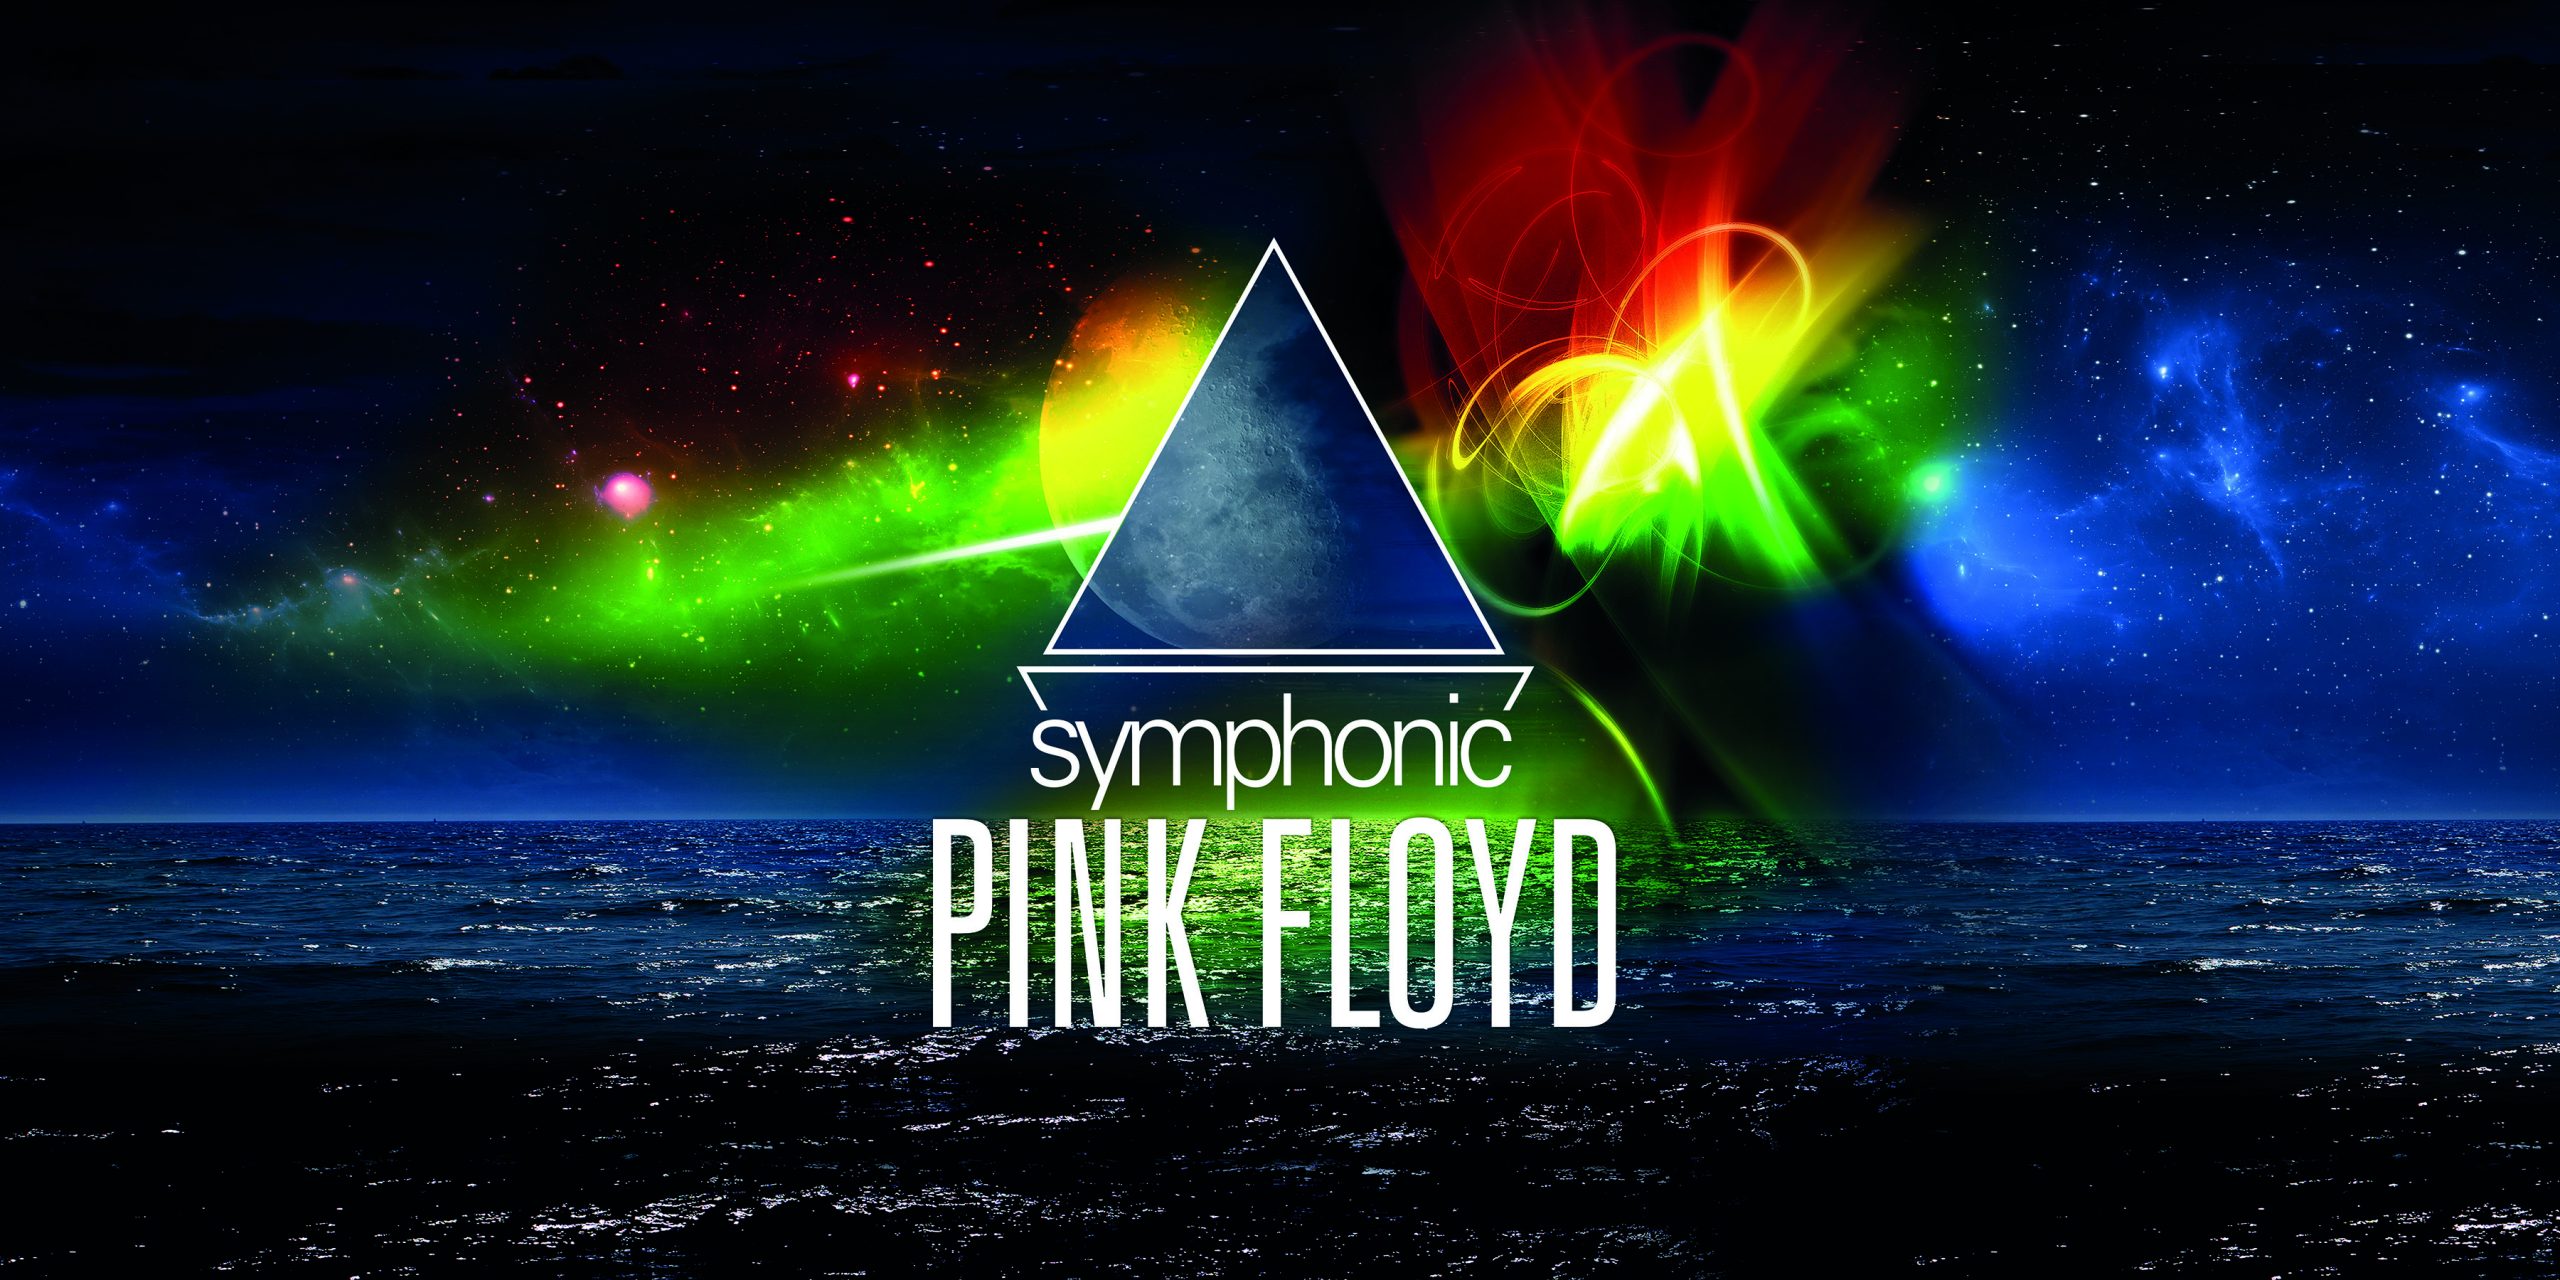 Symphonic Pink Floyd - Bournemouth Symphony Orchestra